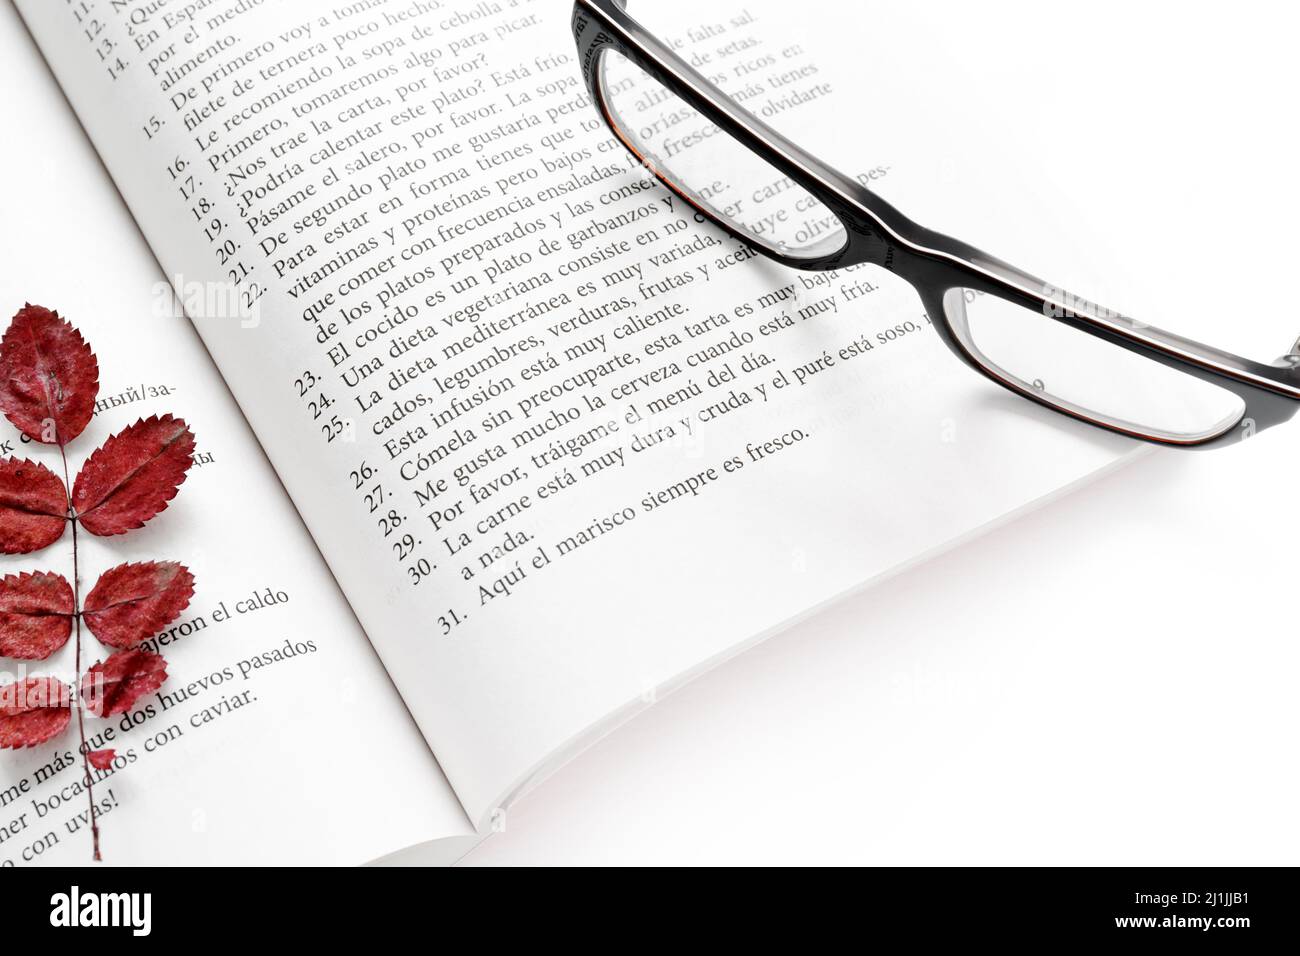 Moscú, Rusia, 19 de abril de 2019:Un libro de texto español de autoayuda abierto con un marcador de hojas de otoño rojas secas y gafas con borde negro en la página Foto de stock